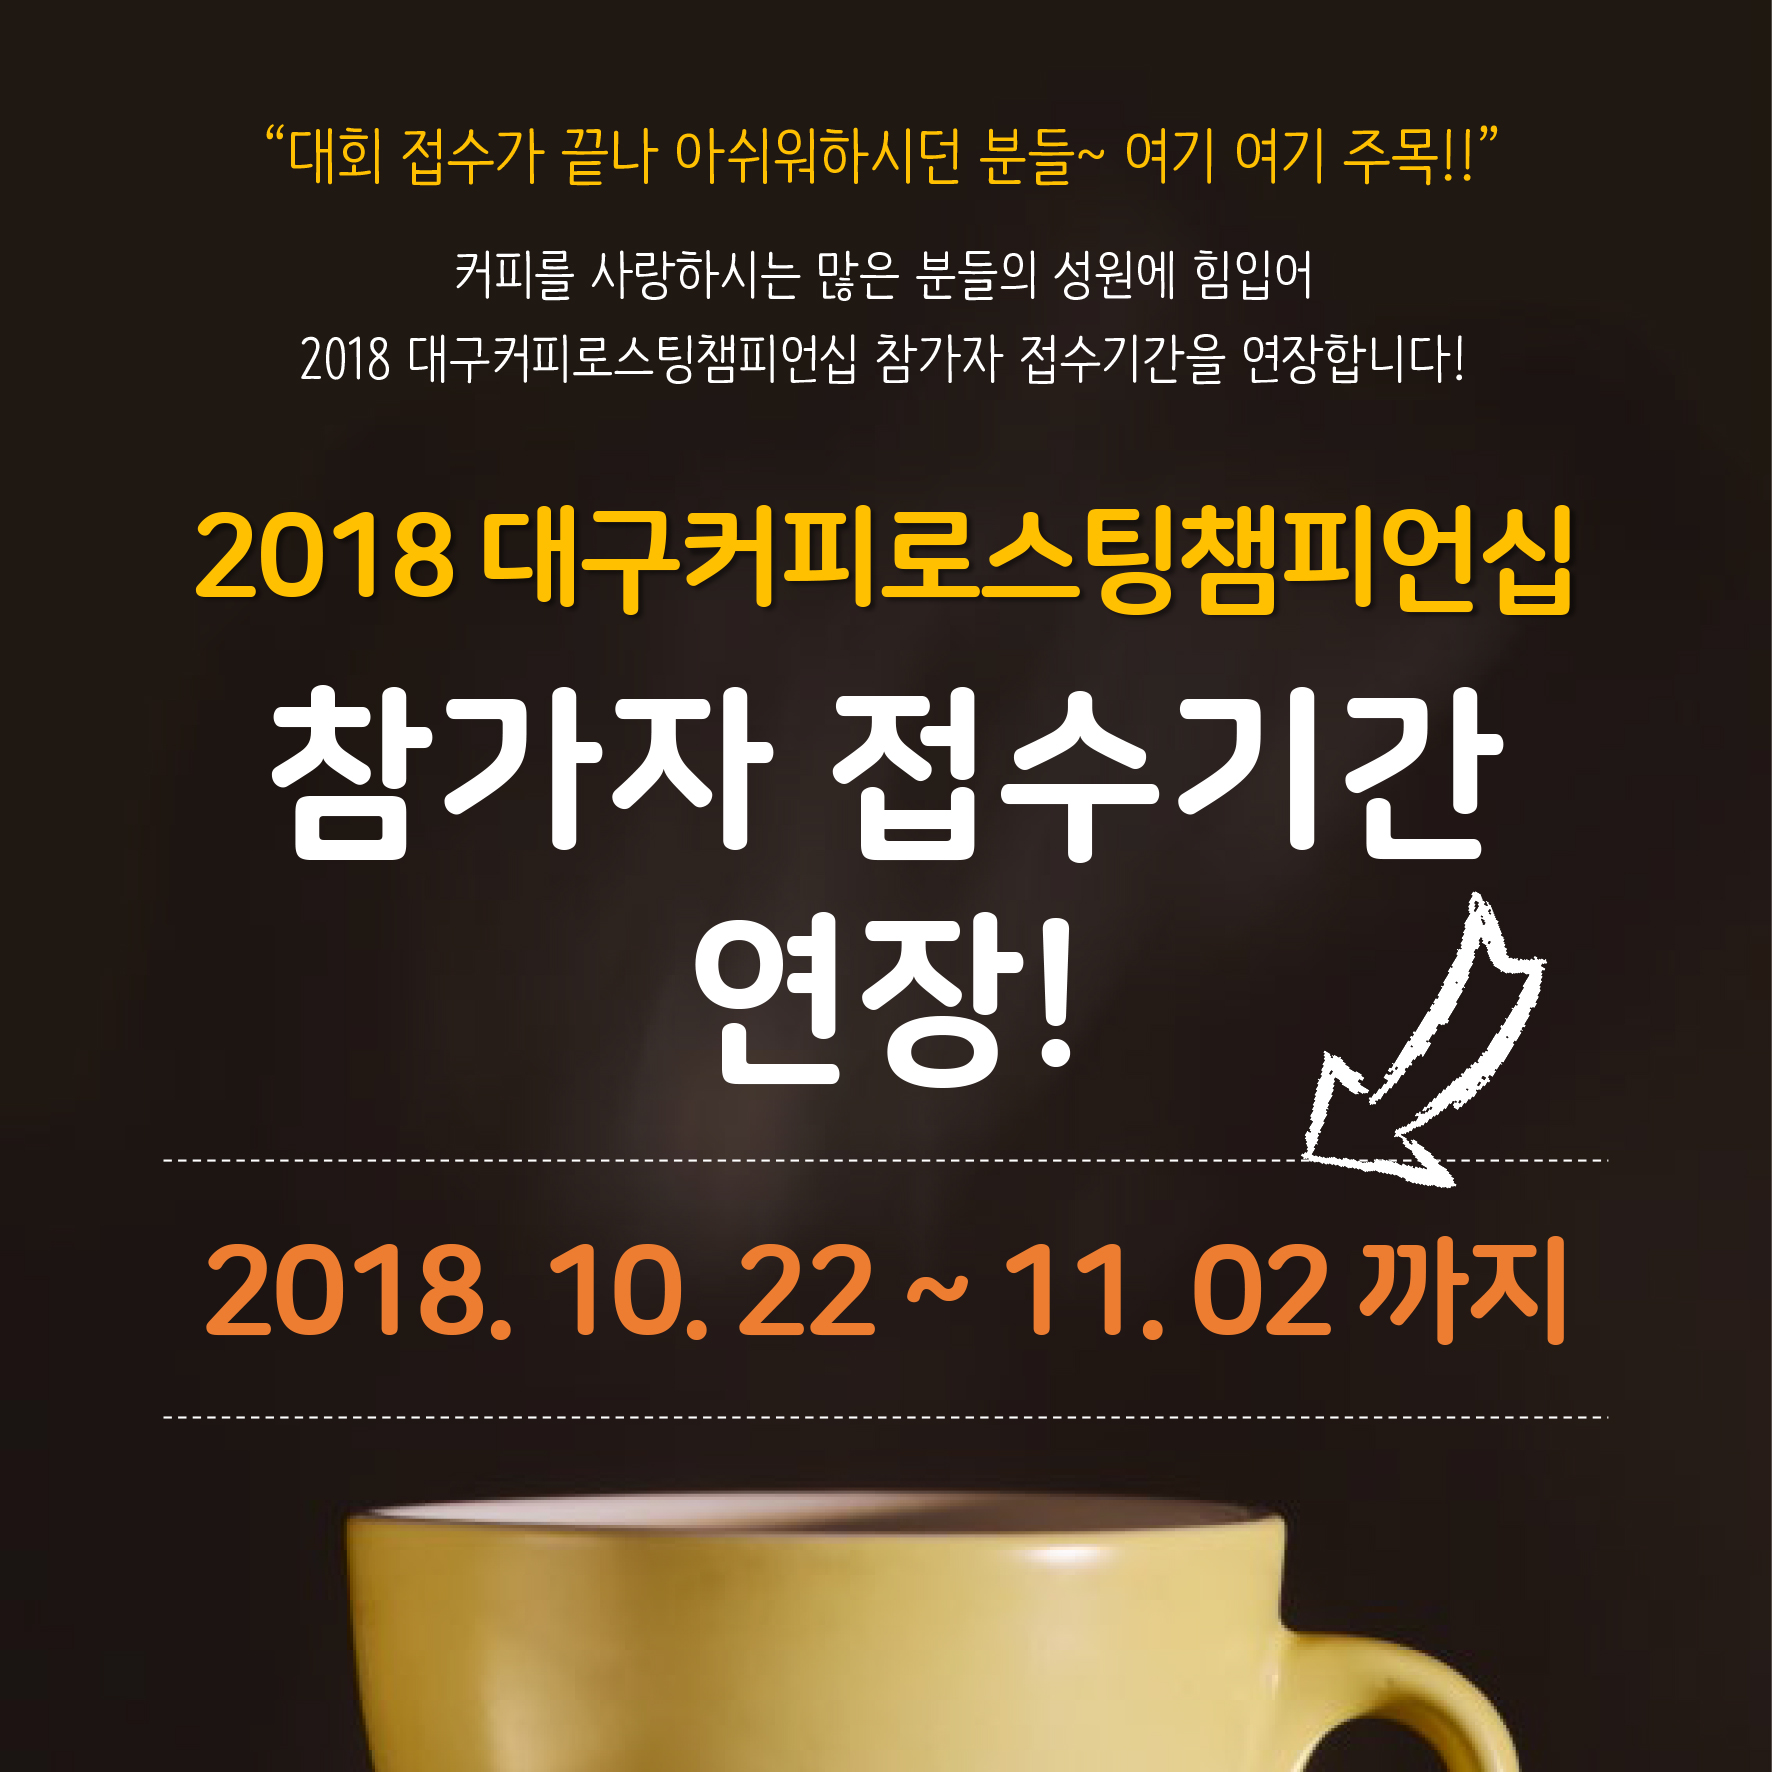 2018 대구커피로스팅챔피언십 참가자 접수기간 연장